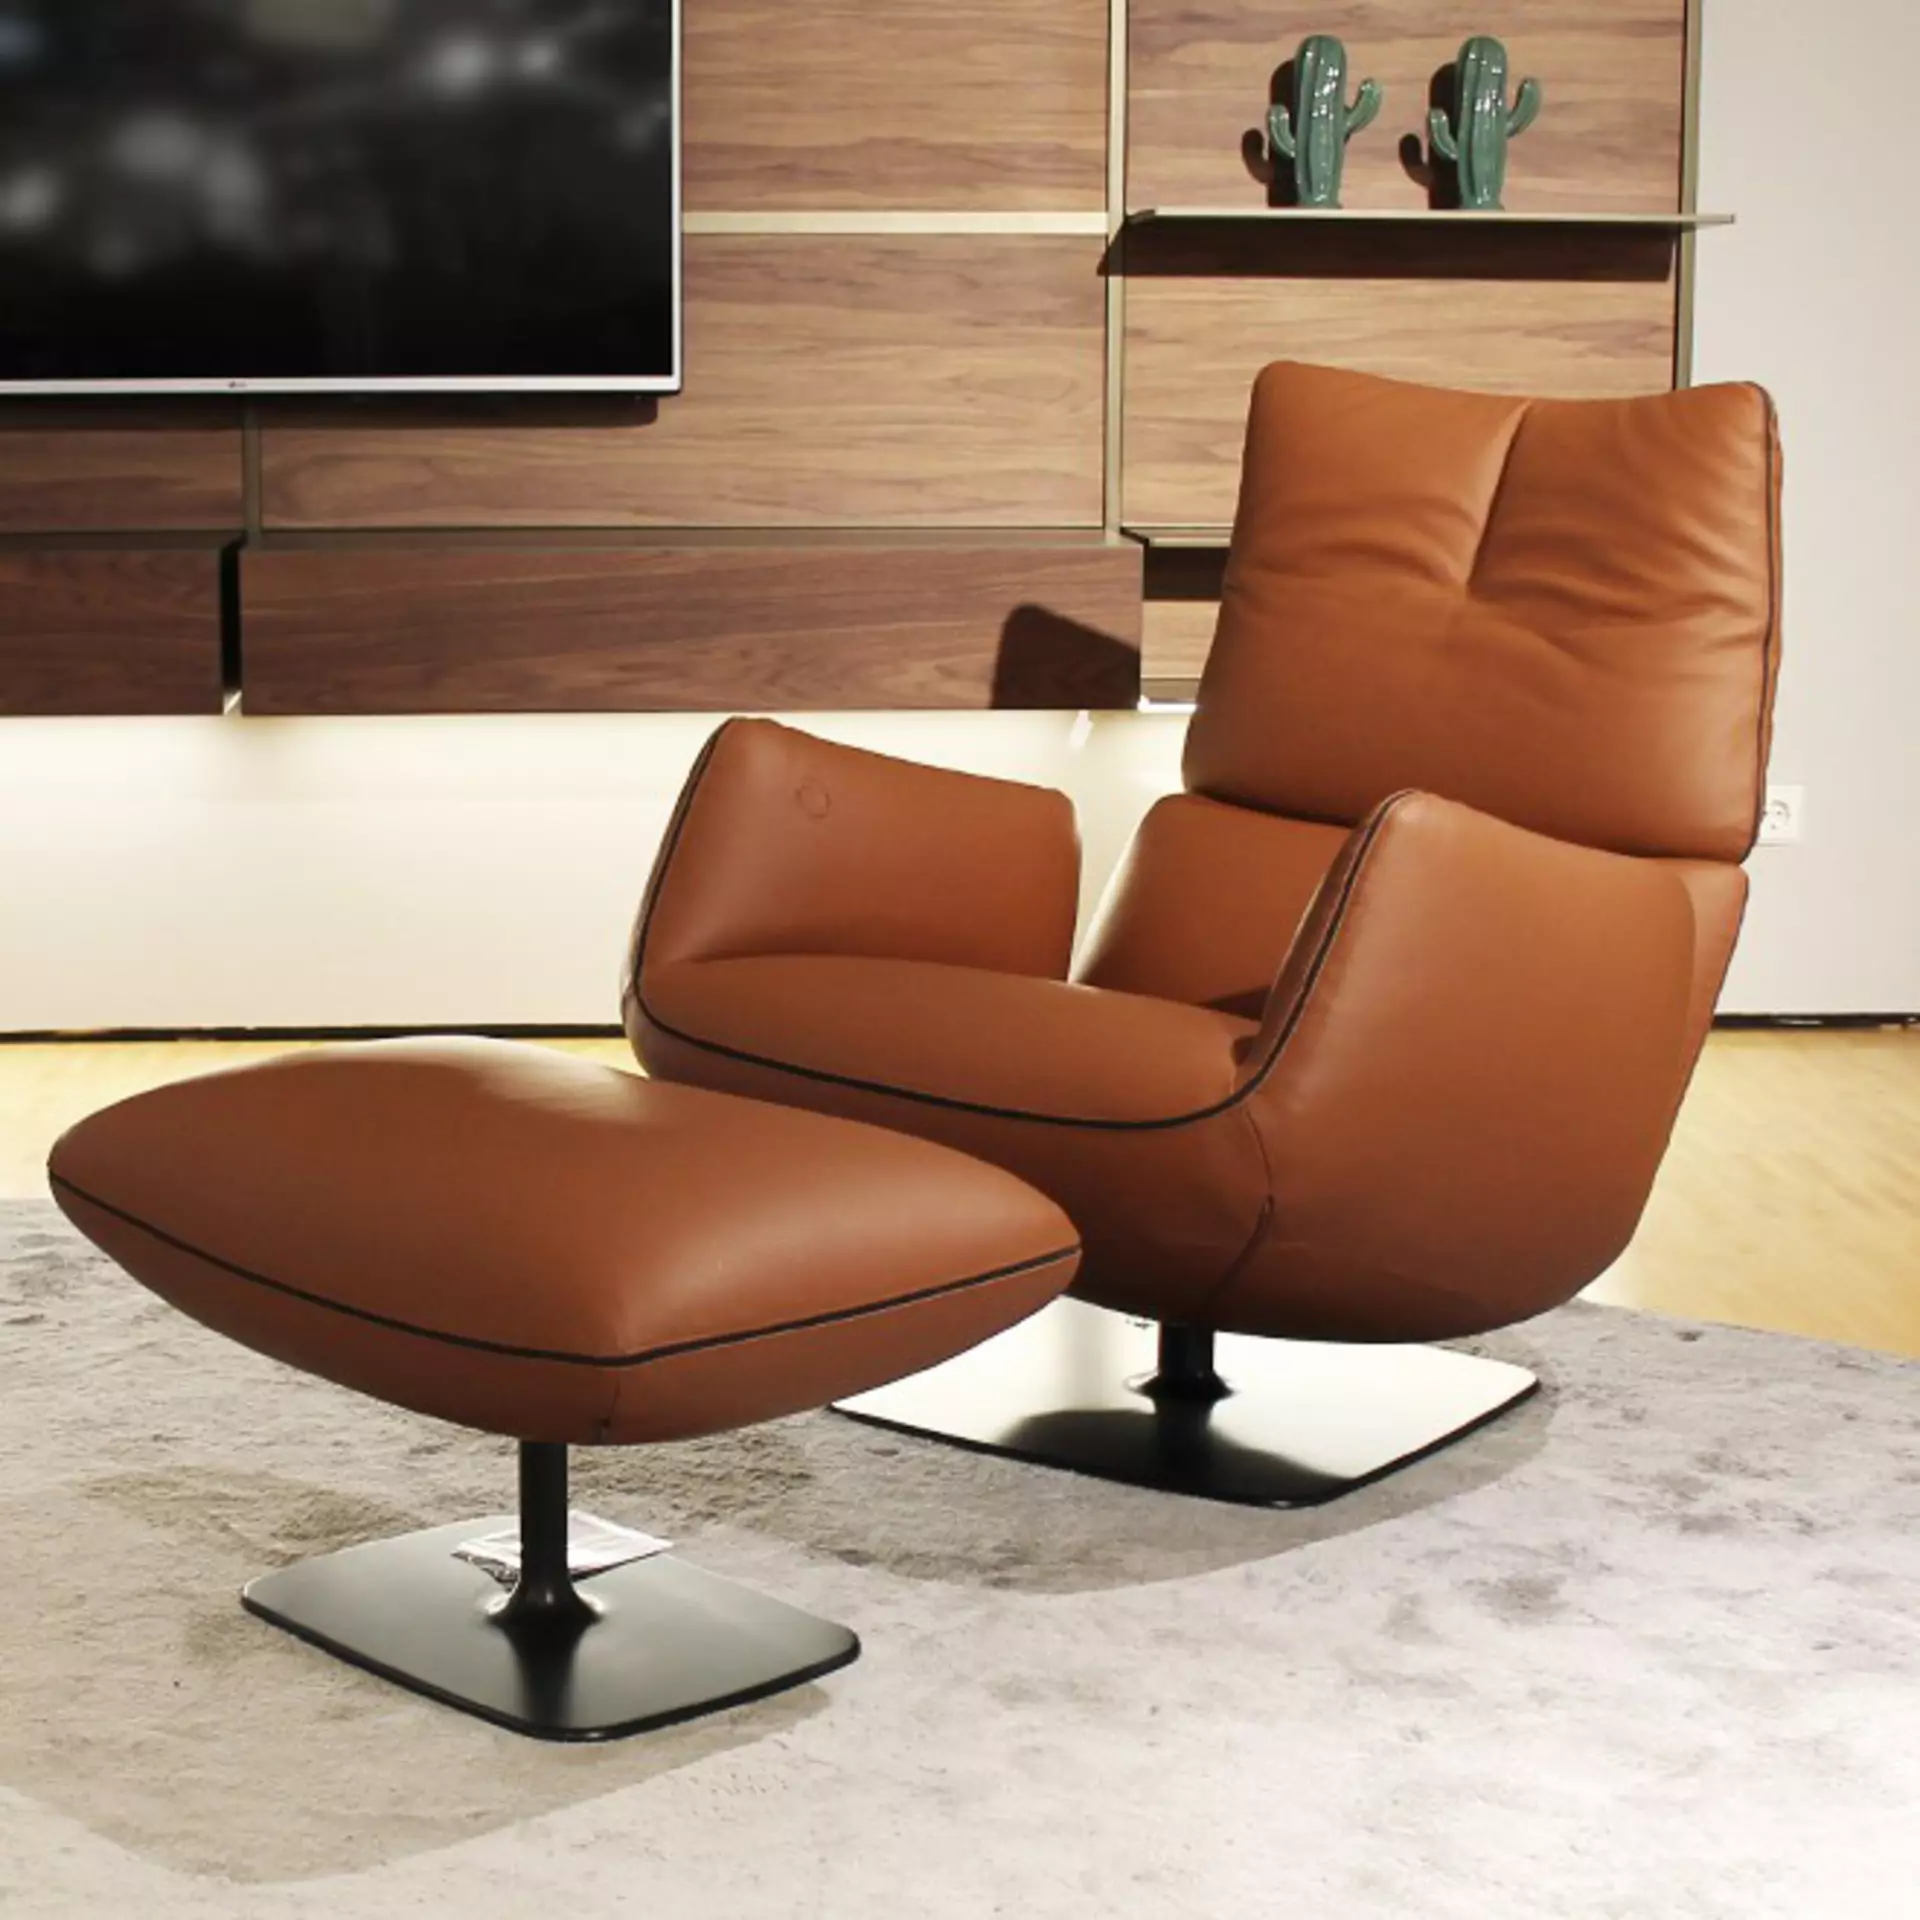 Entspannung für Fortgeschrittene: der Lounge Sessel aus der JALIS Kollektion von COR bei interni by inhofer